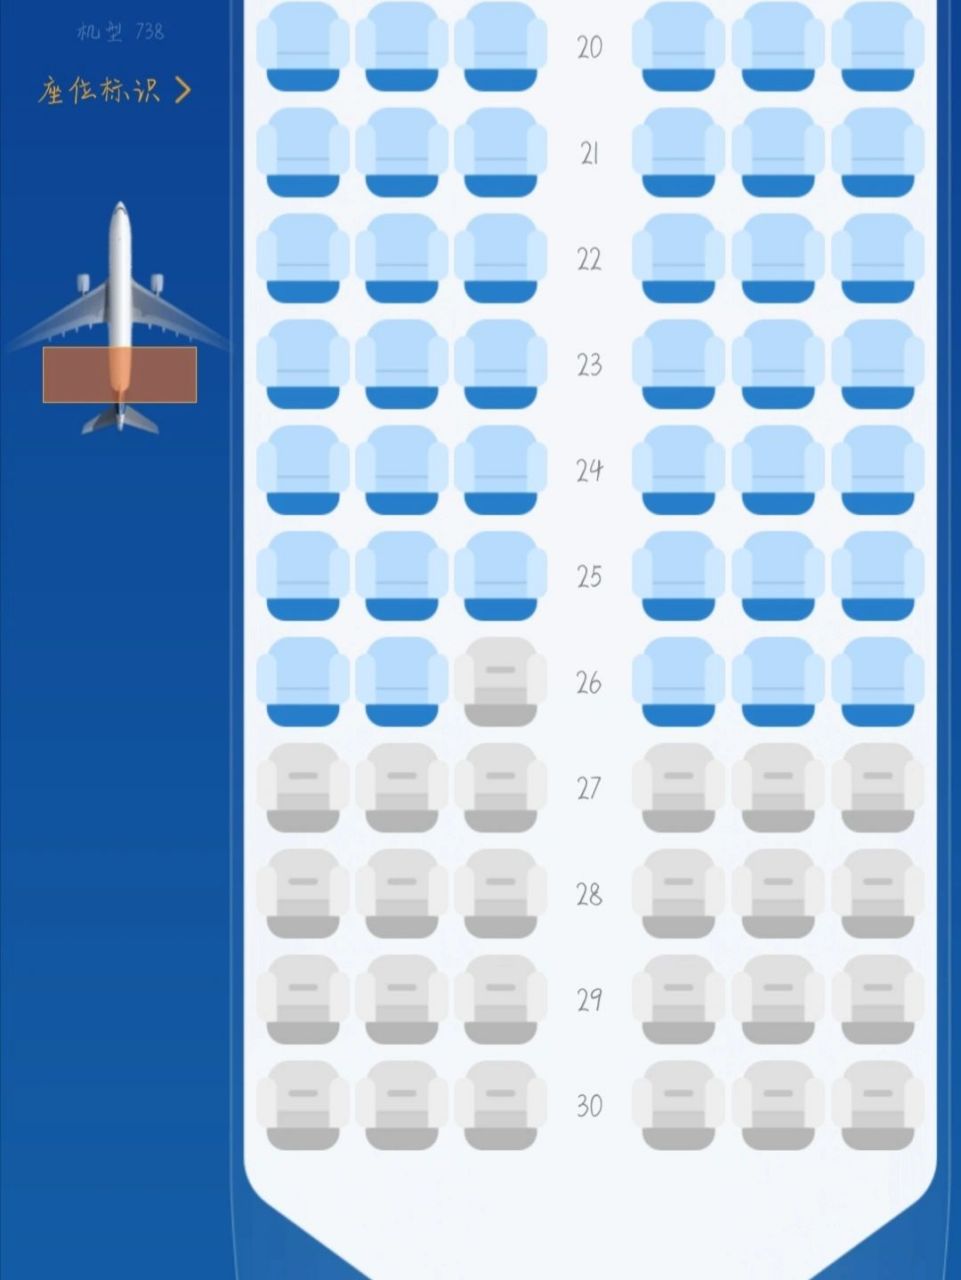 山东航空737800座位图图片